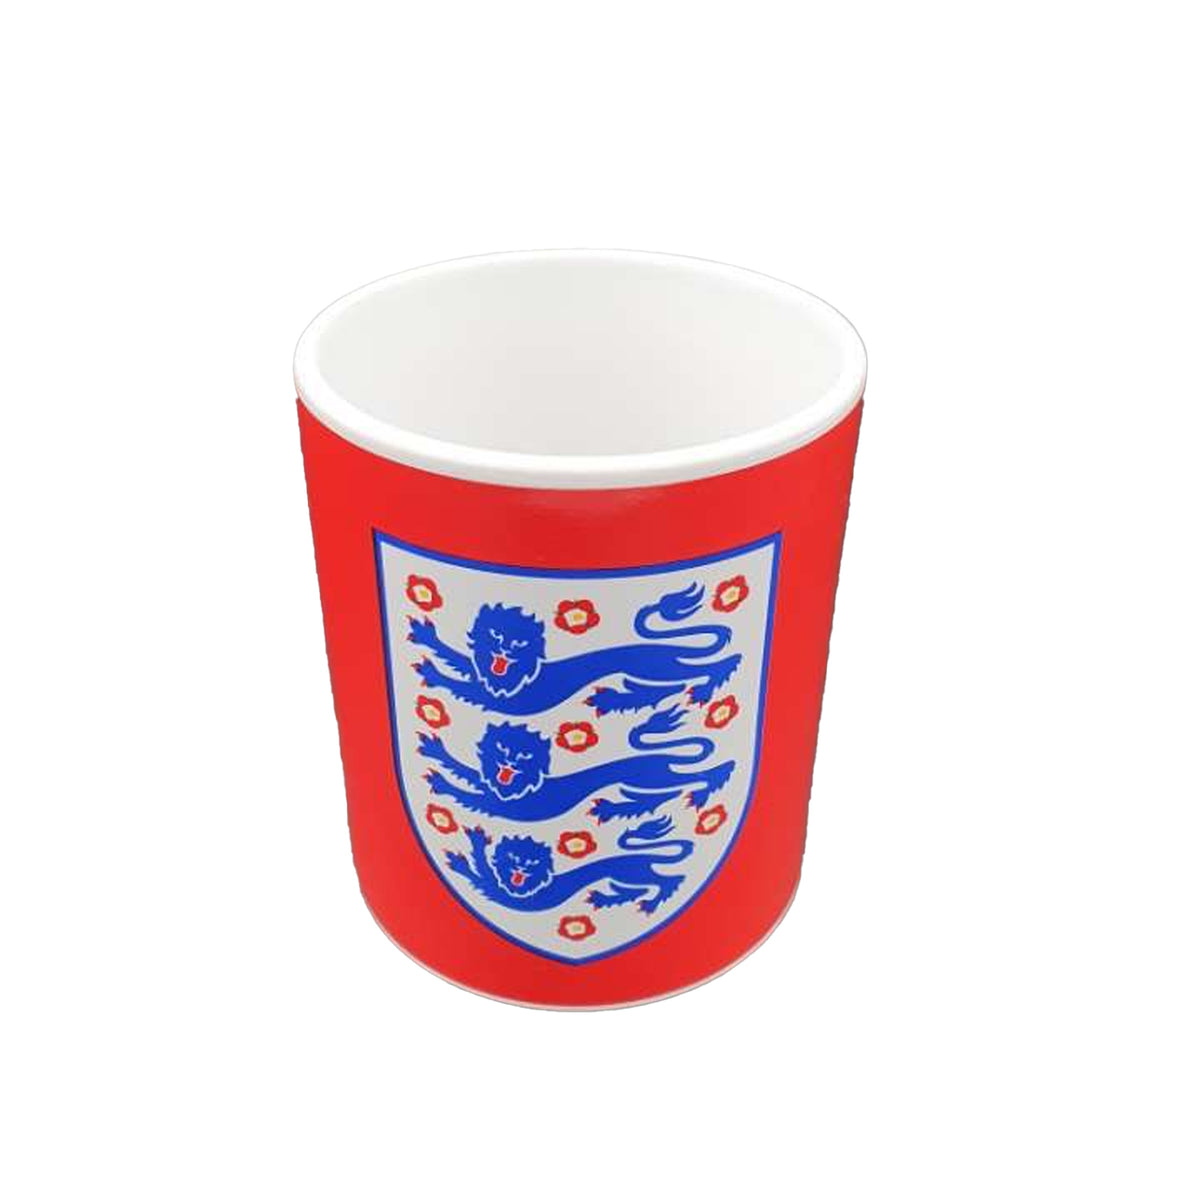 England FA Solid Colour Crest